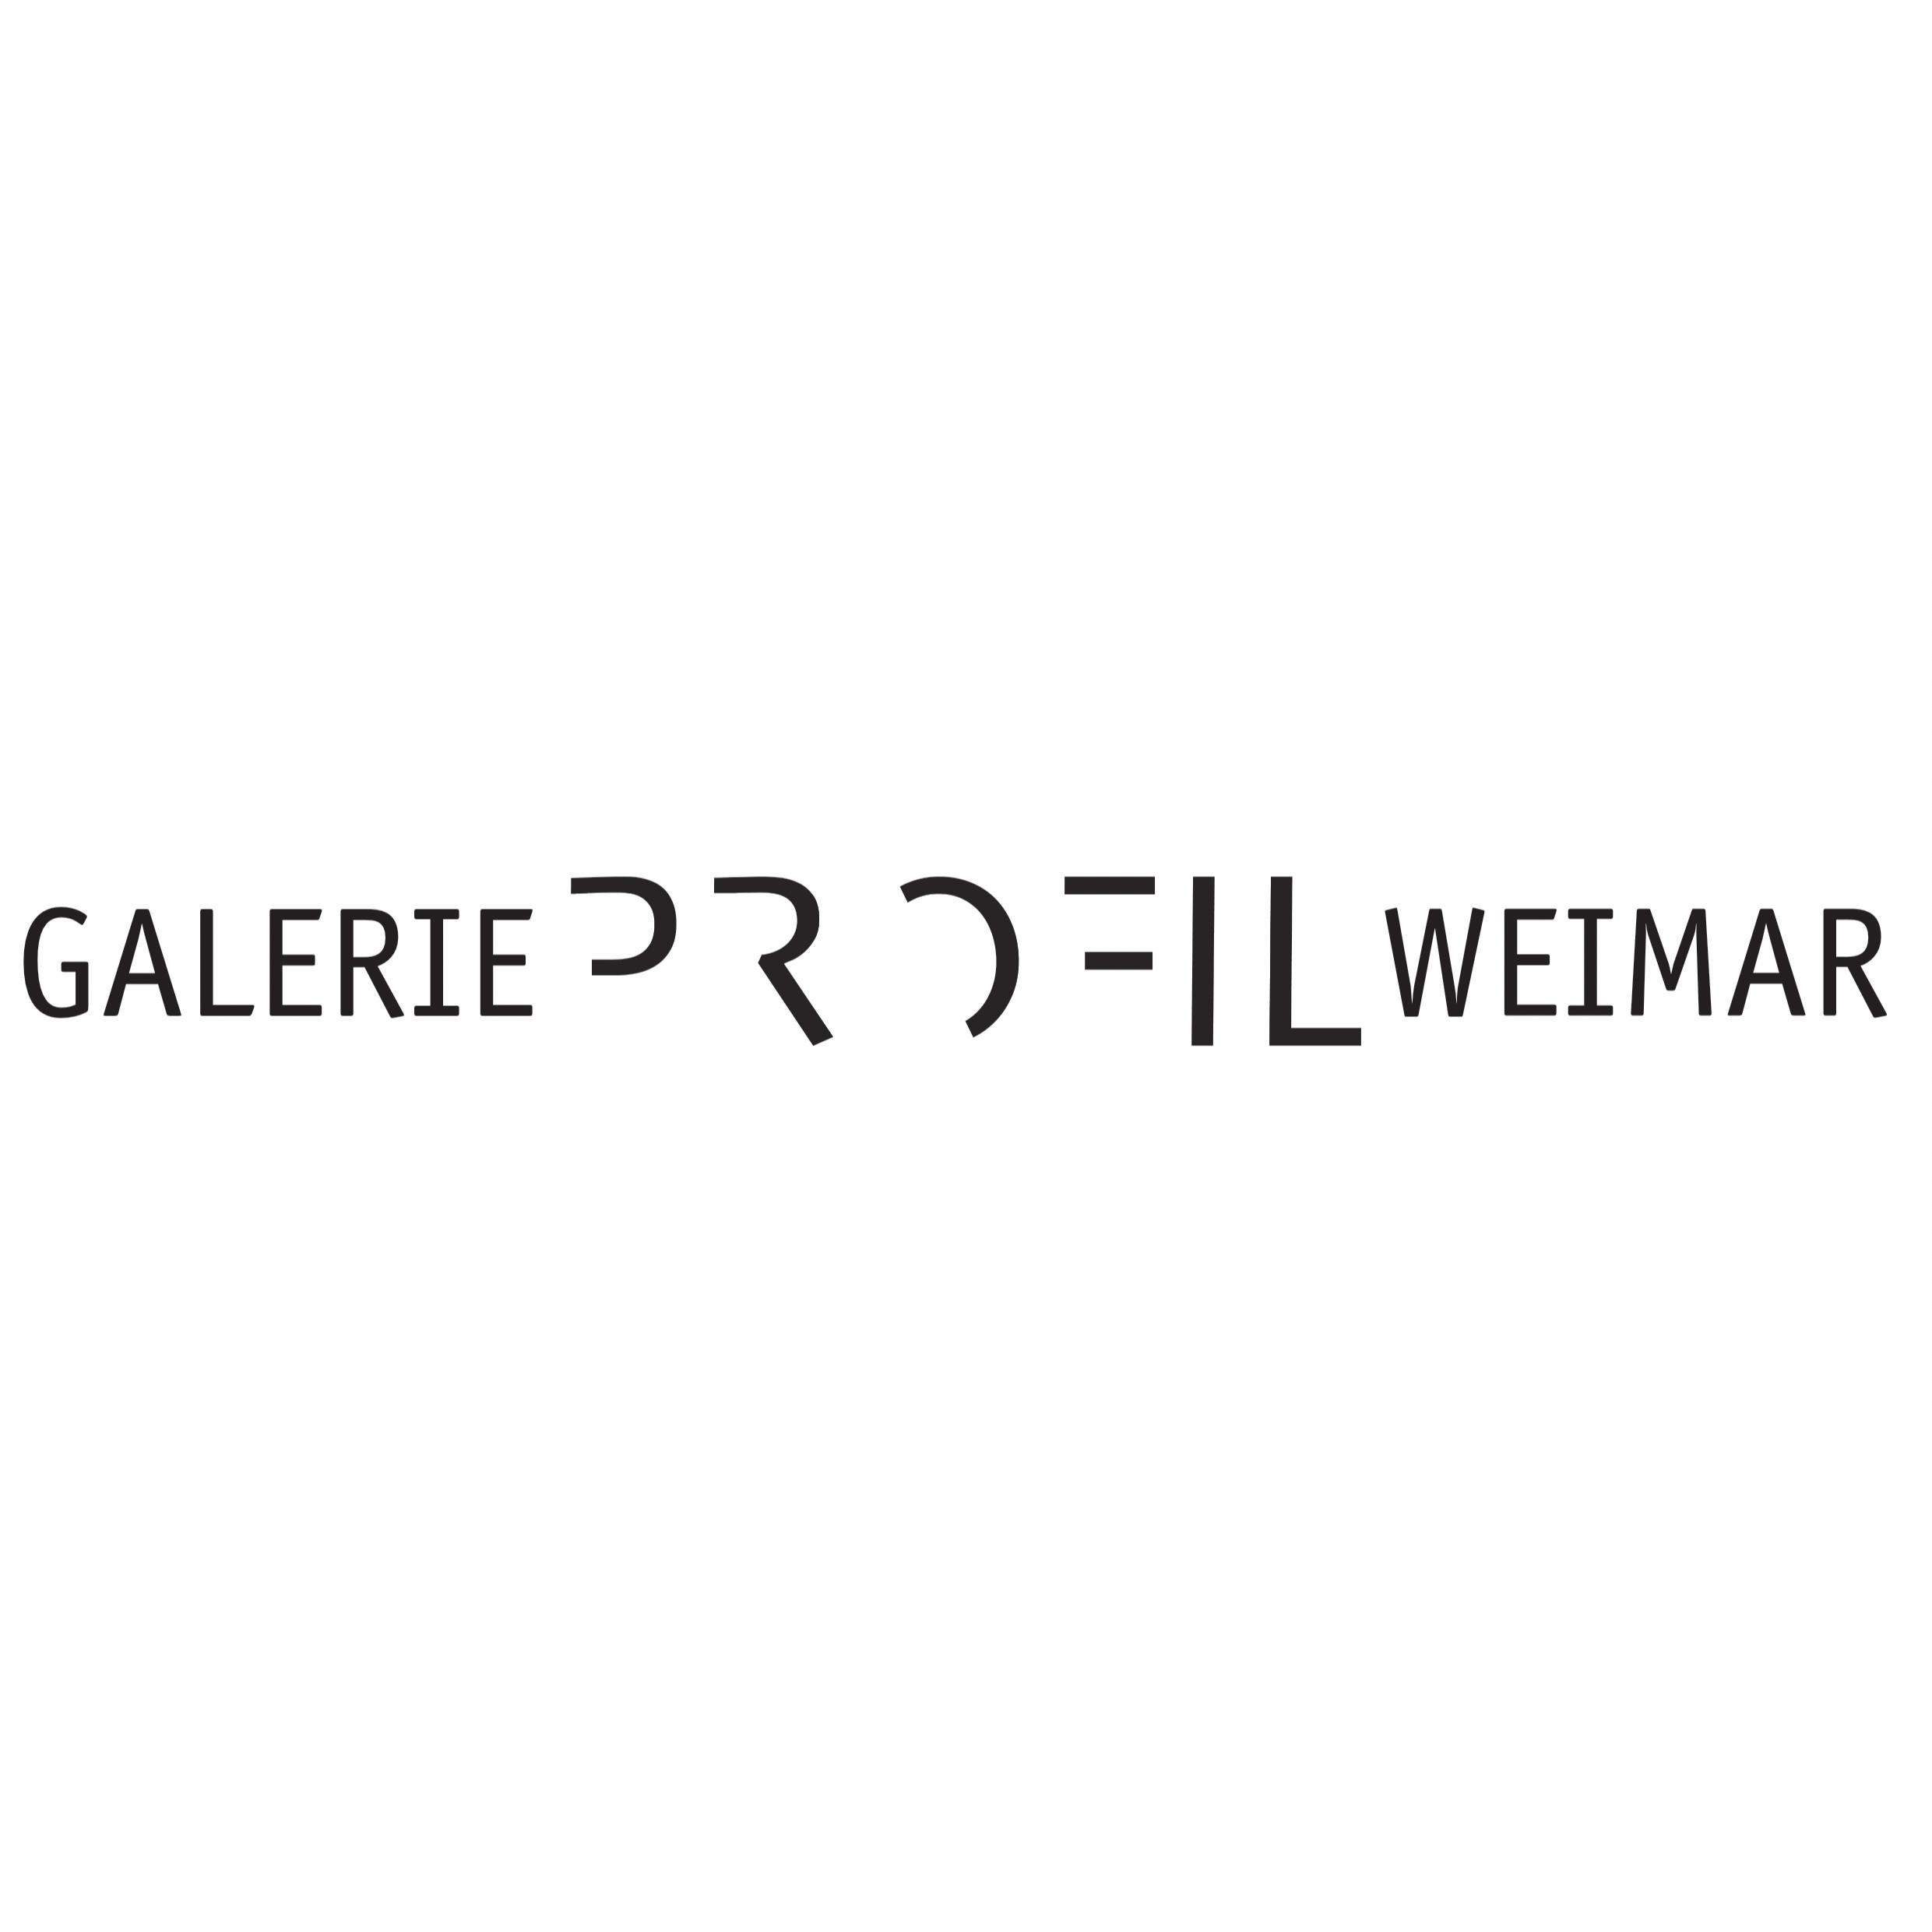 Galerie Profil Weimar in Weimar in Thüringen - Logo